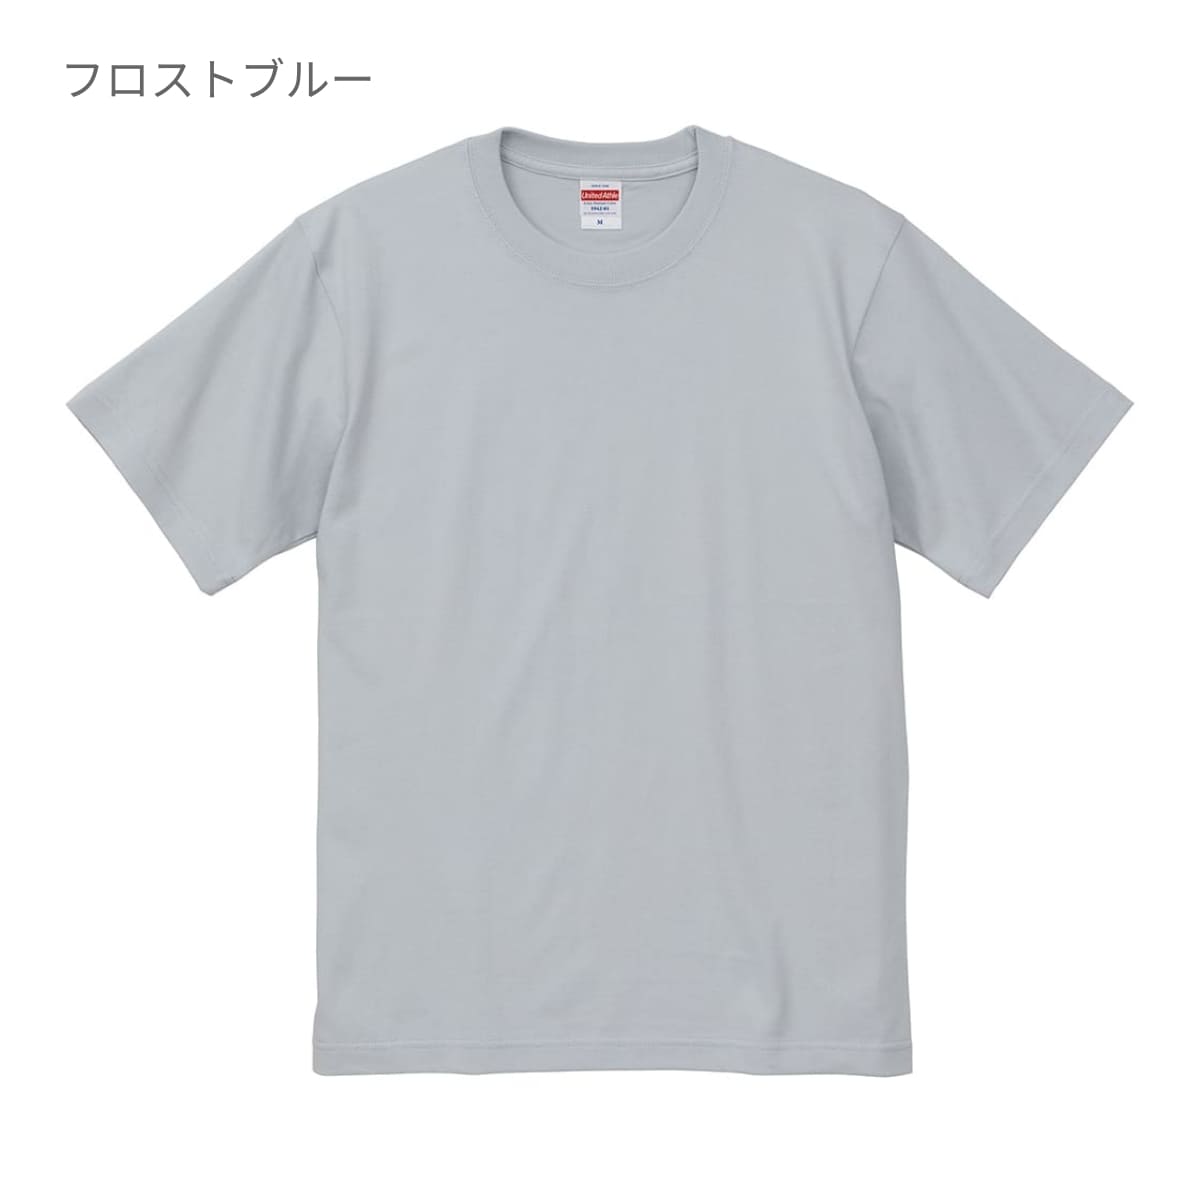 1394メンズ【カルバンクライン】Mサイズ  ワイシャツ  送料無料